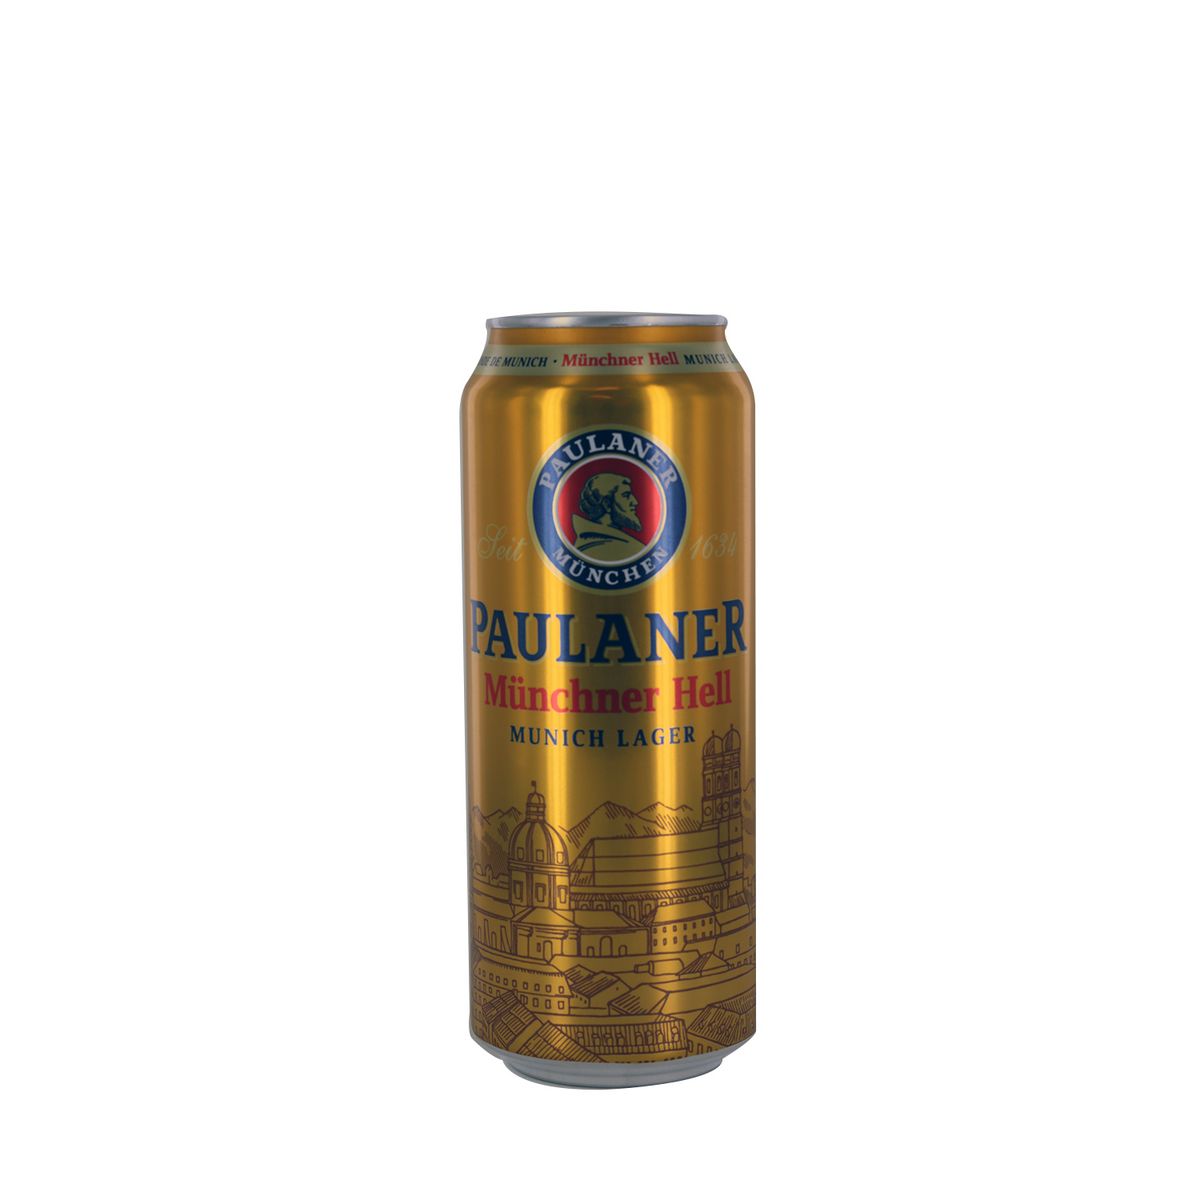 PAULANER Bière blonde Muncher Hell 4.9% 50cl